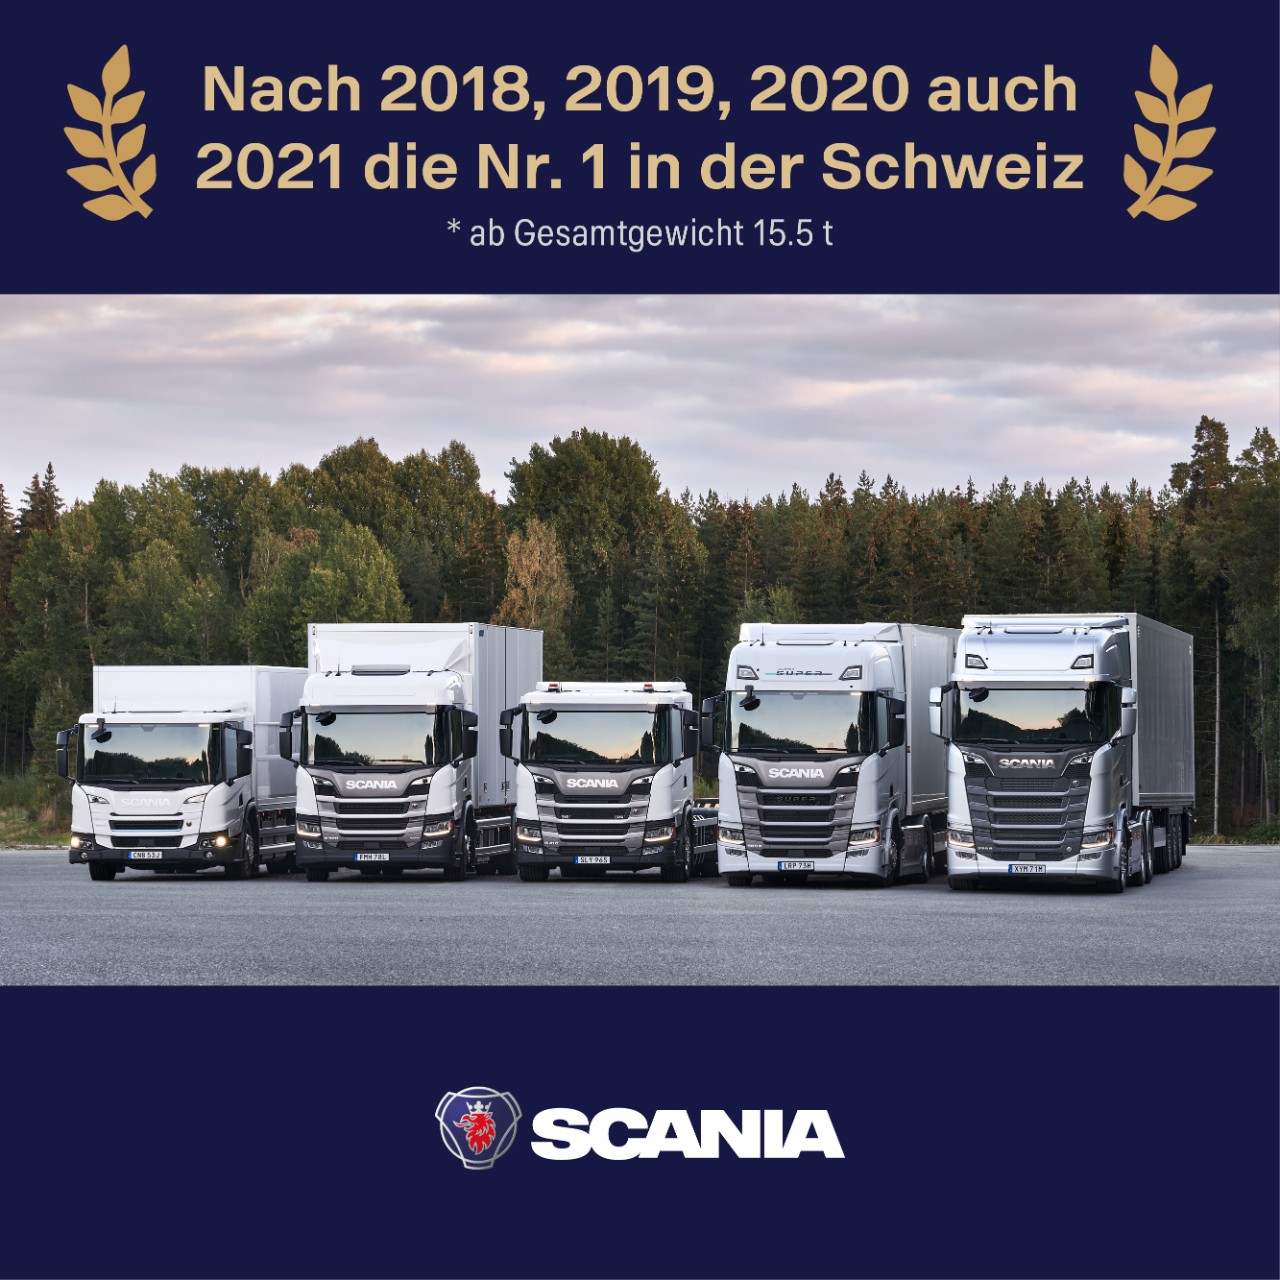 Scania 2021 erneut Marktführer bei schweren Nutzfahrzeugen